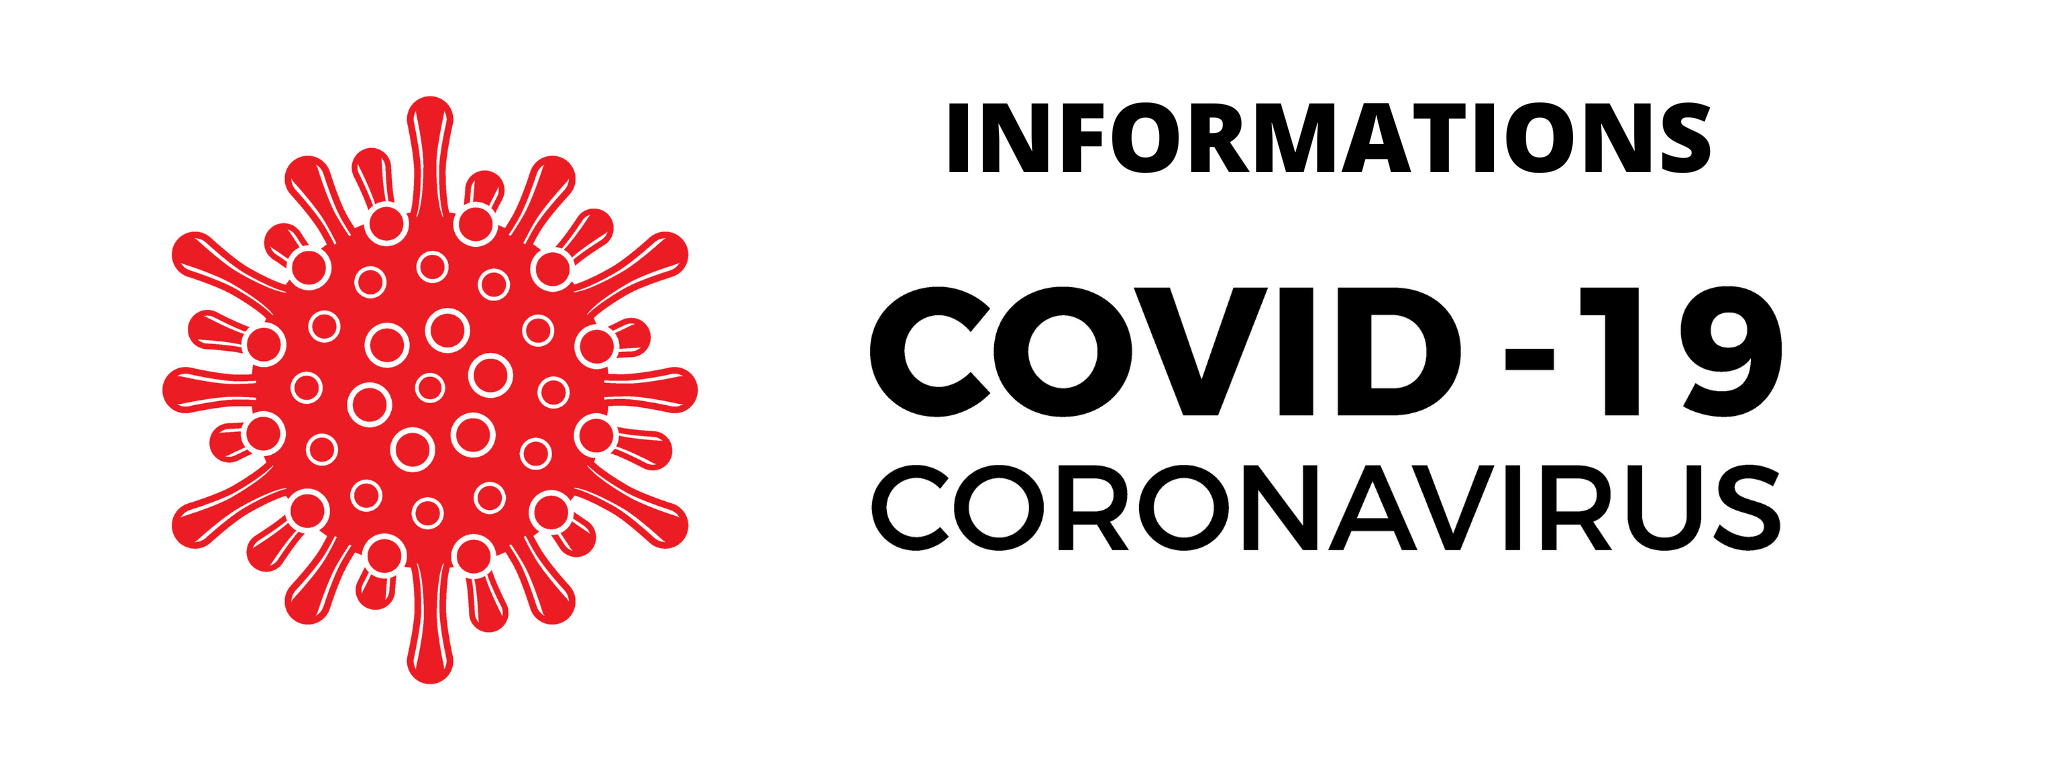 Informations sur les mesures Covid 19 à l'agence